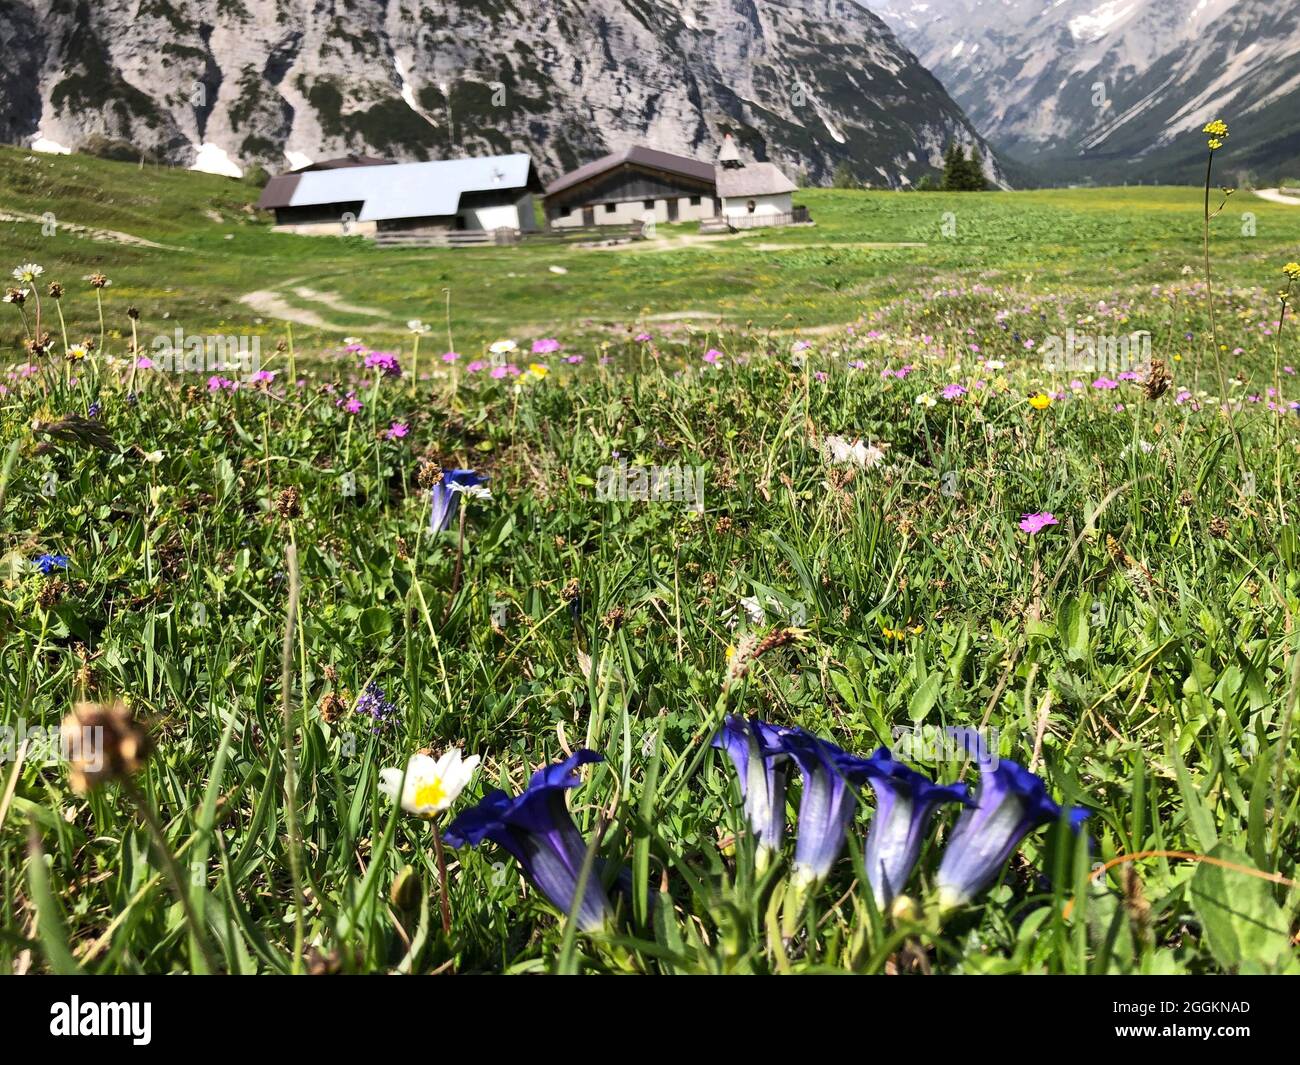 Karwendelhaus, Enzian, flower meadow, Hochalm, Hochalmkapelle, nature, mountains, Karwendel Mountains, Scharnitz, Tyrol, Austria Stock Photo